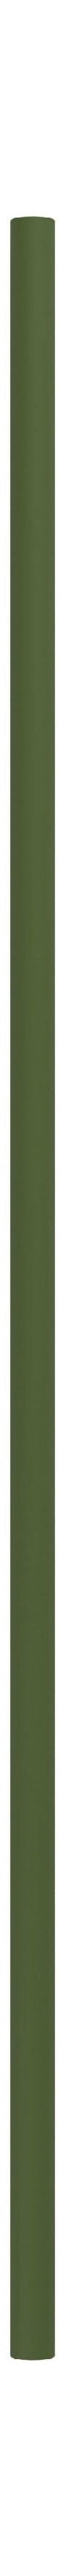 Moebe Système de étagères / étagères murales jambe 85 cm, vert pin